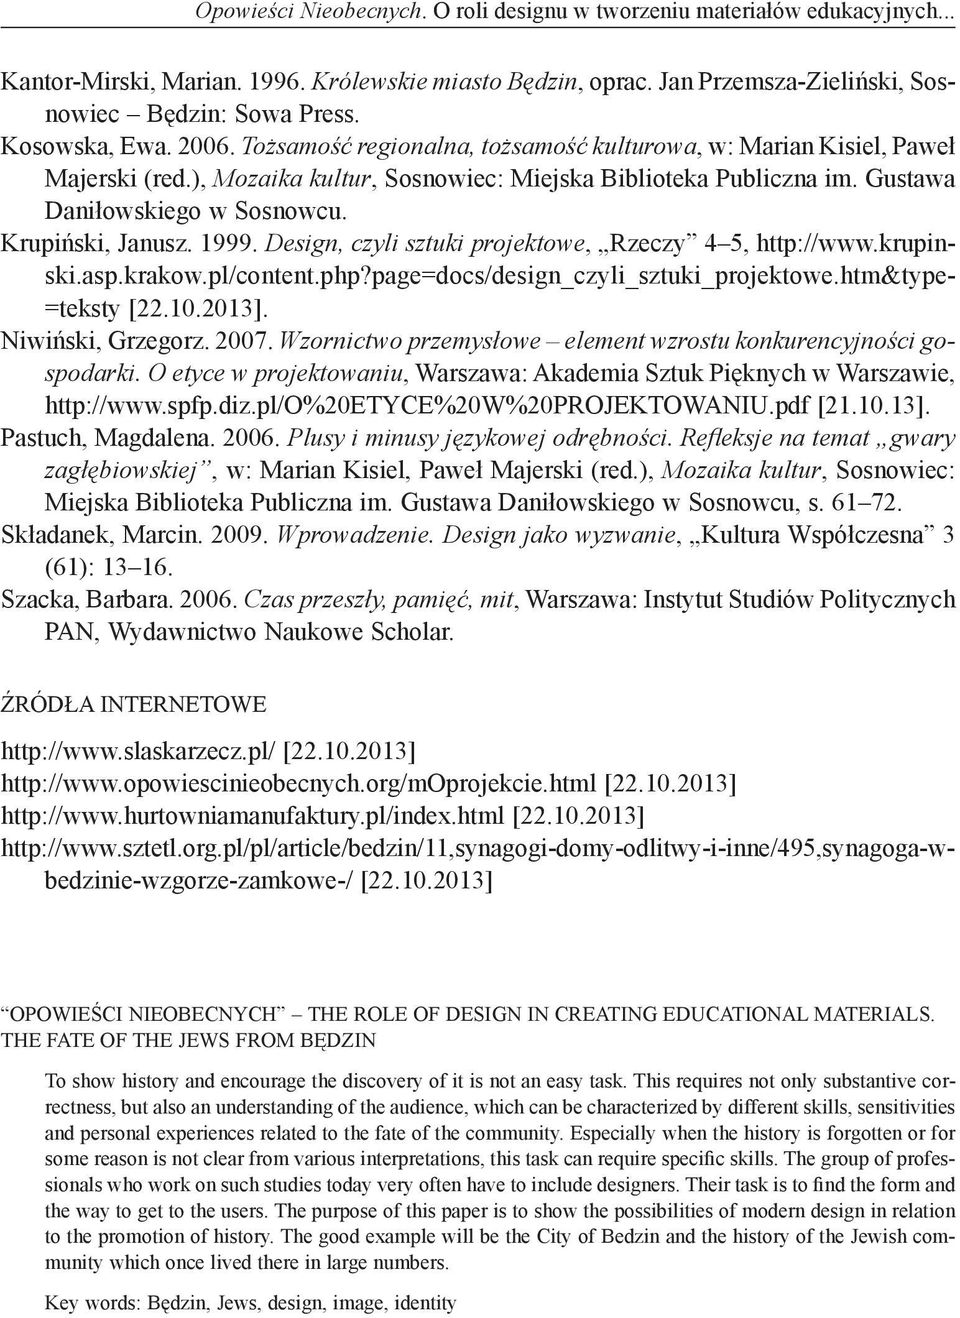 Krupiński, Janusz. 1999. Design, czyli sztuki projektowe, Rzeczy 4 5, http://www.krupin- ski.asp.krakow.pl/content.php?page=docs/design_czyli_sztuki_projektowe.htm&type- =teksty [22.10.2013].